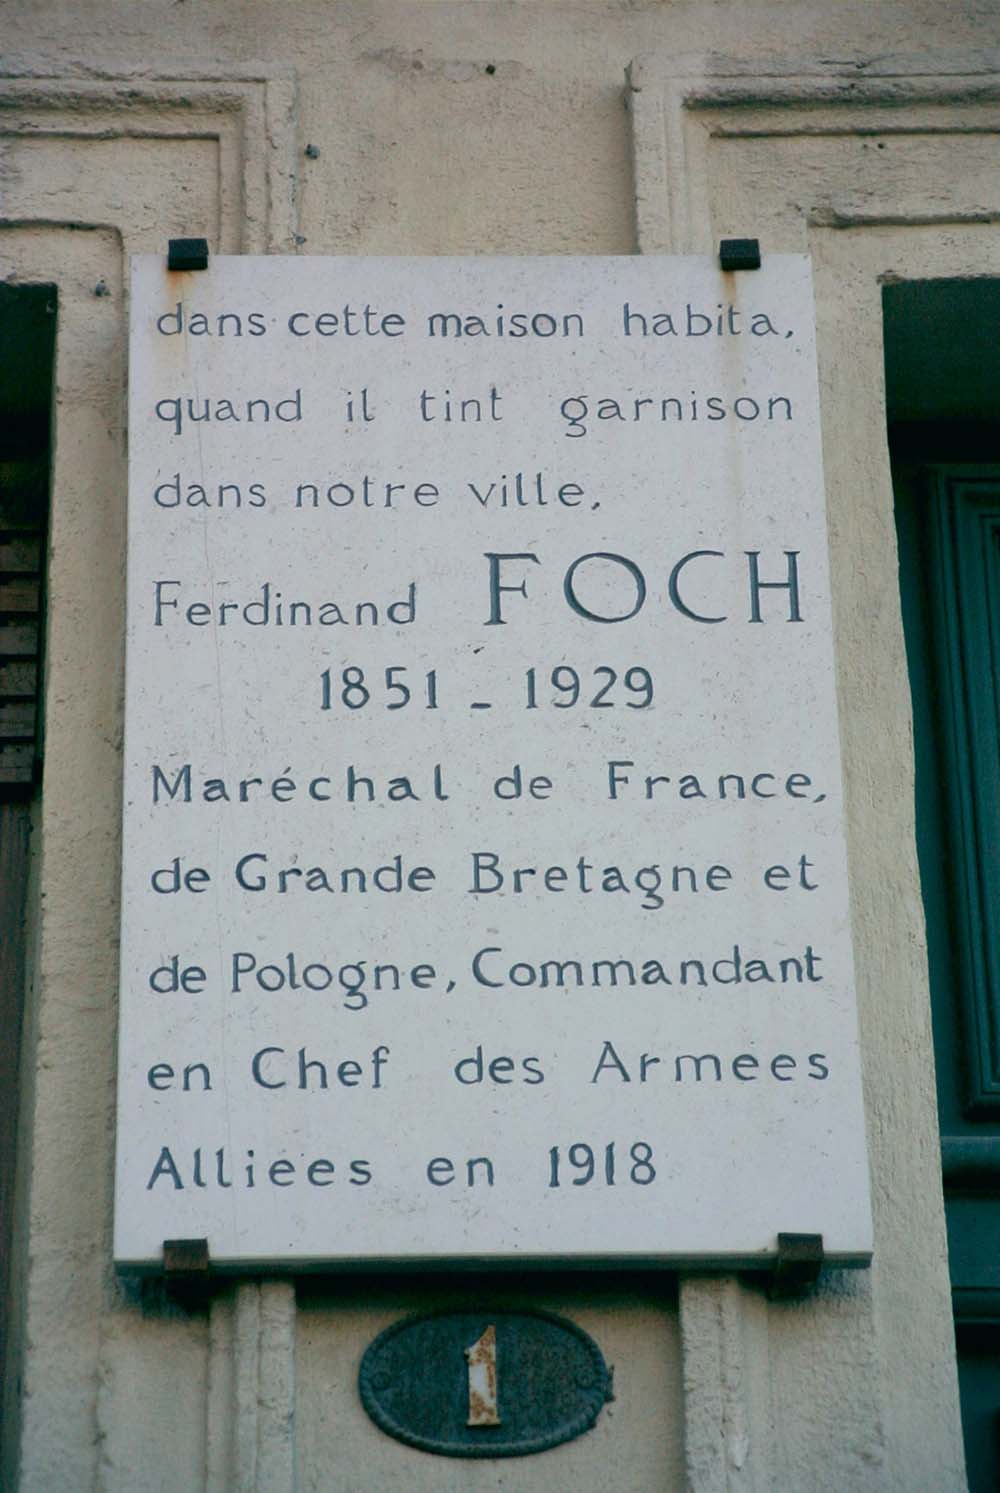 House Marshal Ferdinand Foch